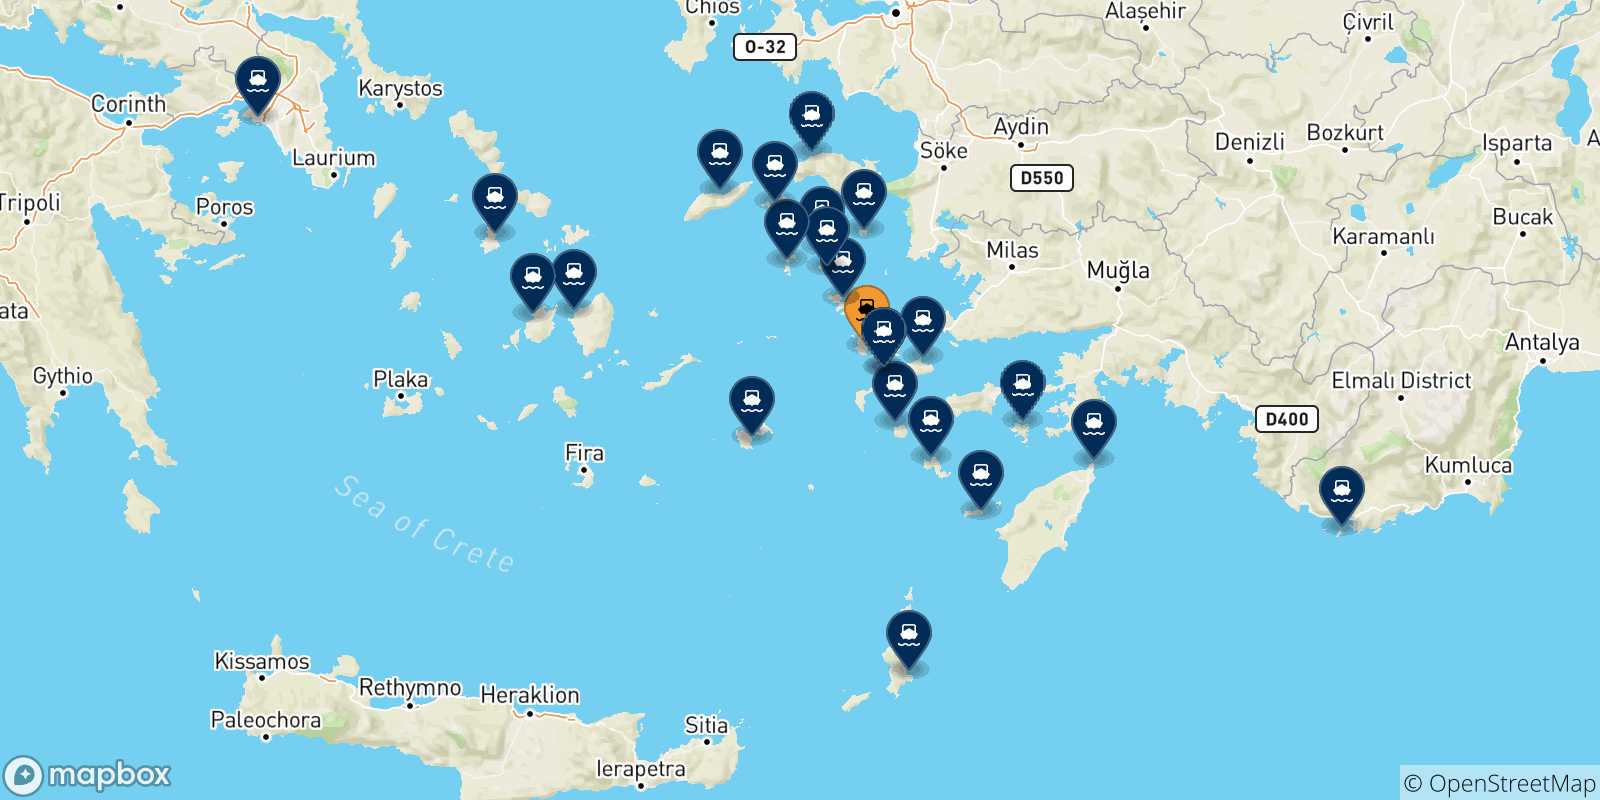 Mappa delle possibili rotte tra Kalymnos e la Grecia